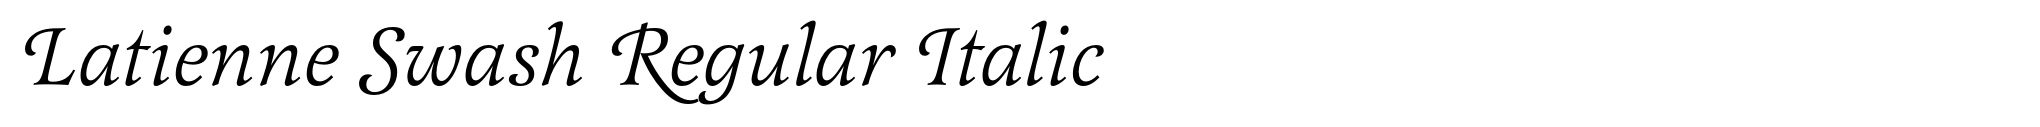 Latienne Swash Regular Italic image